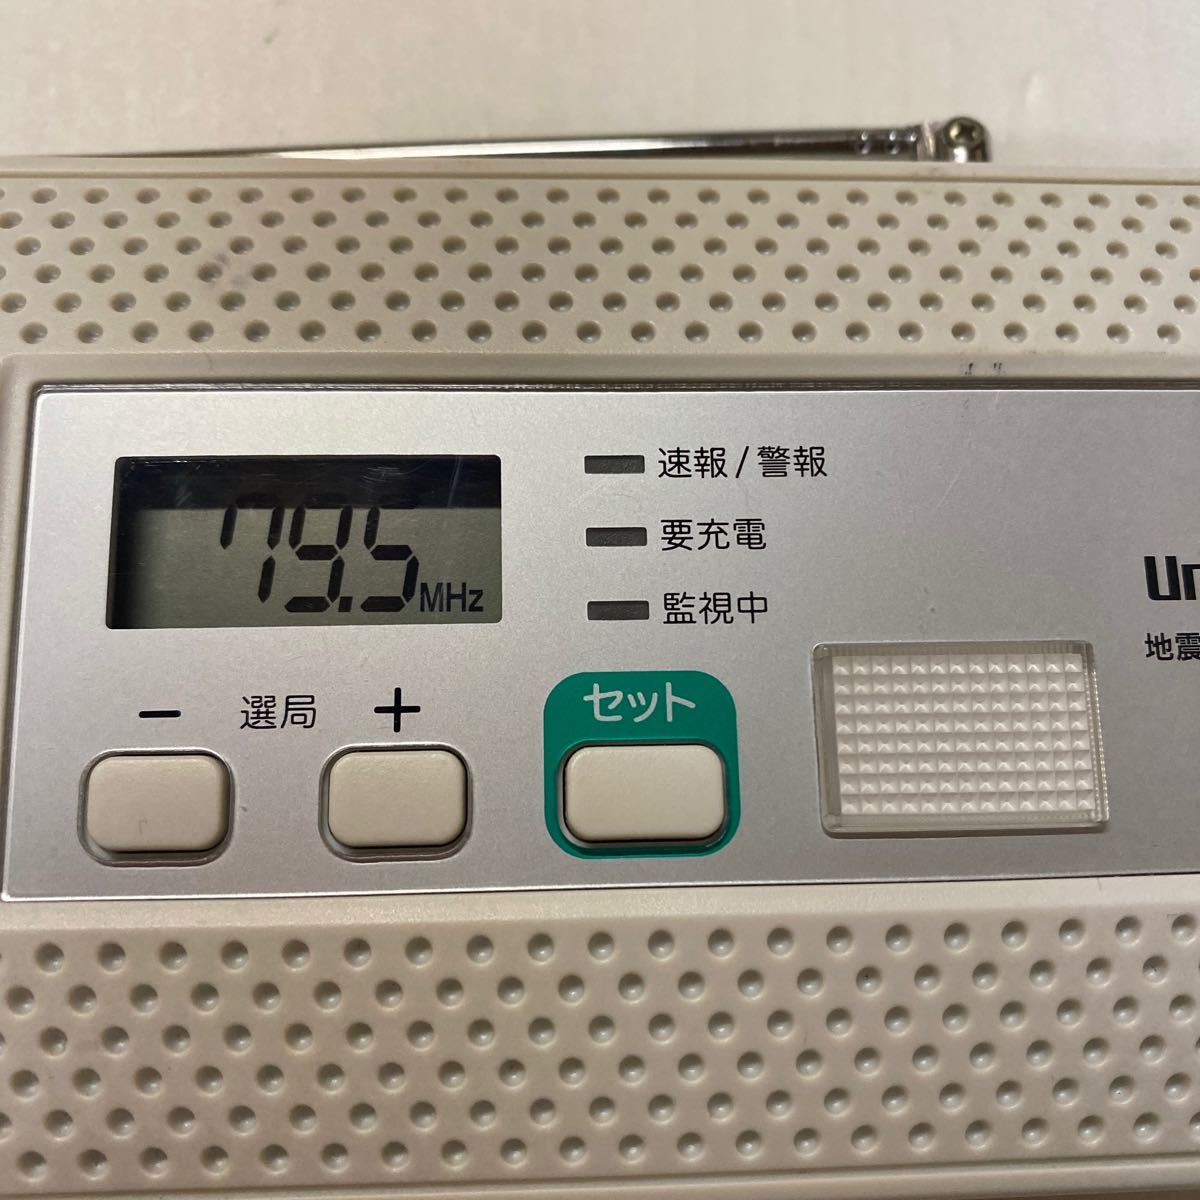 UNIDEN 地震津波警報機 EWR200 FMラジオ 年代物 防災 ラジオ ライト 新春初売り_画像2